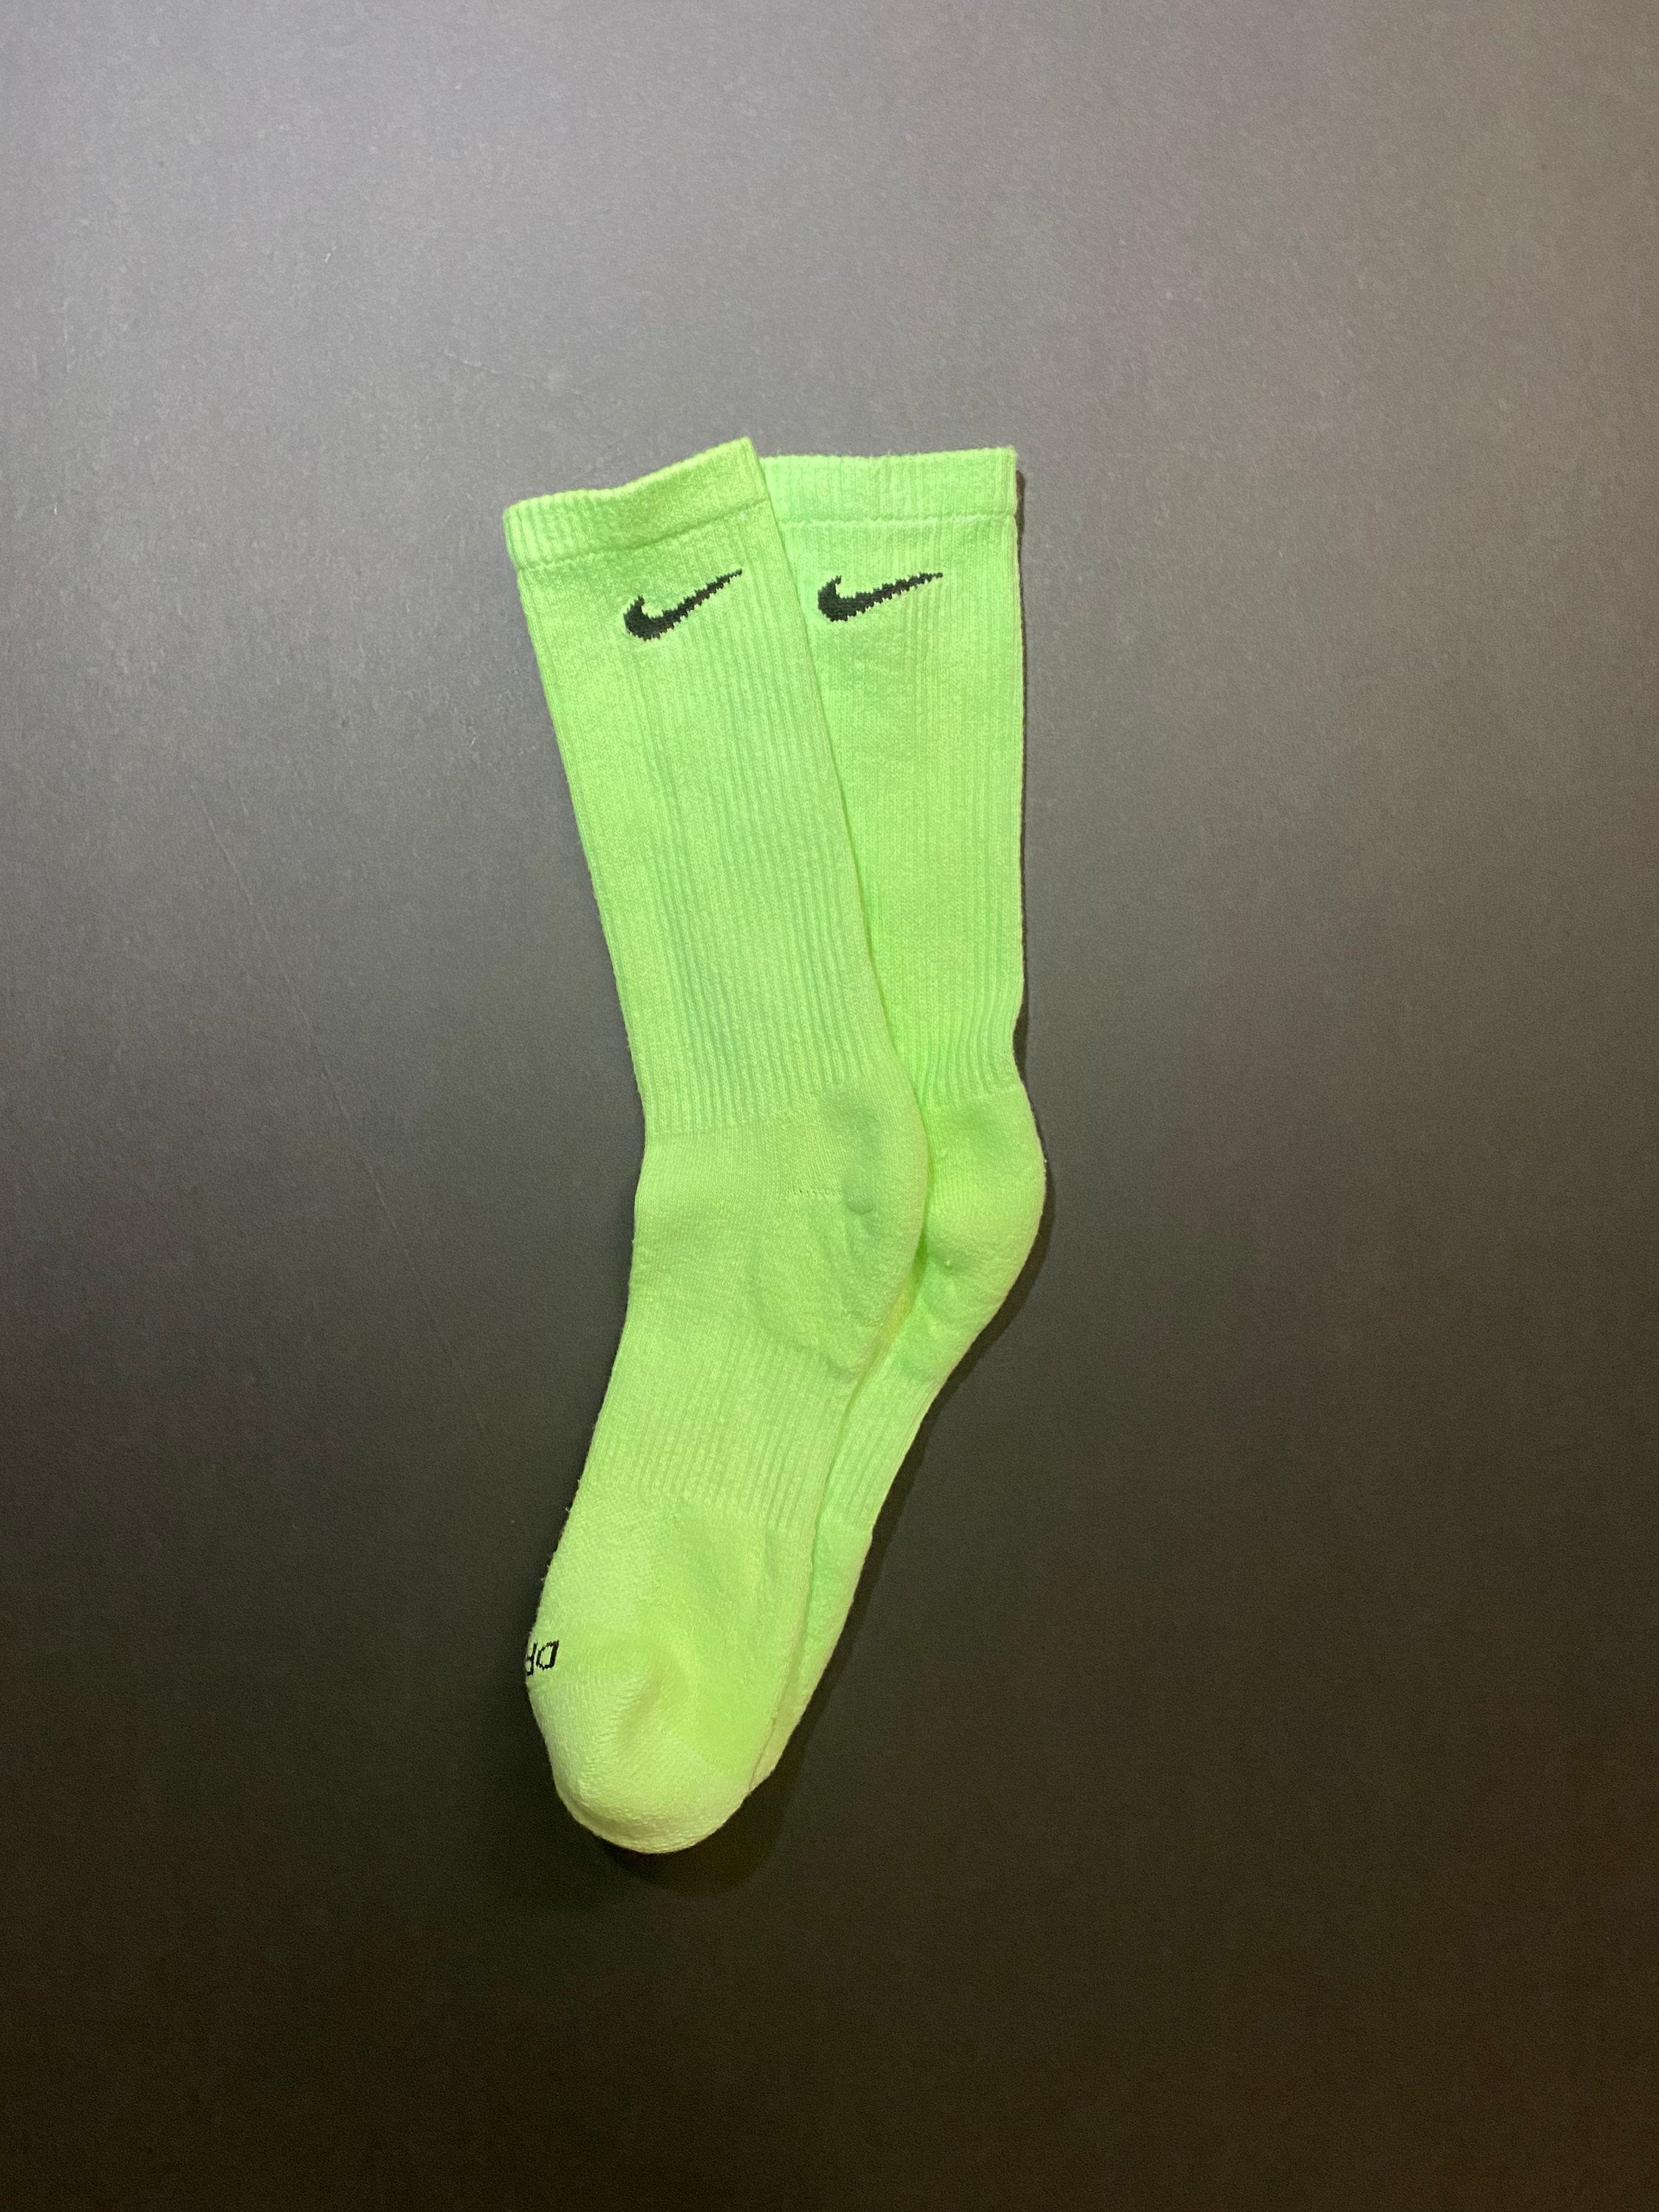 Clan caloría éxito Green Nike Socks - Etsy